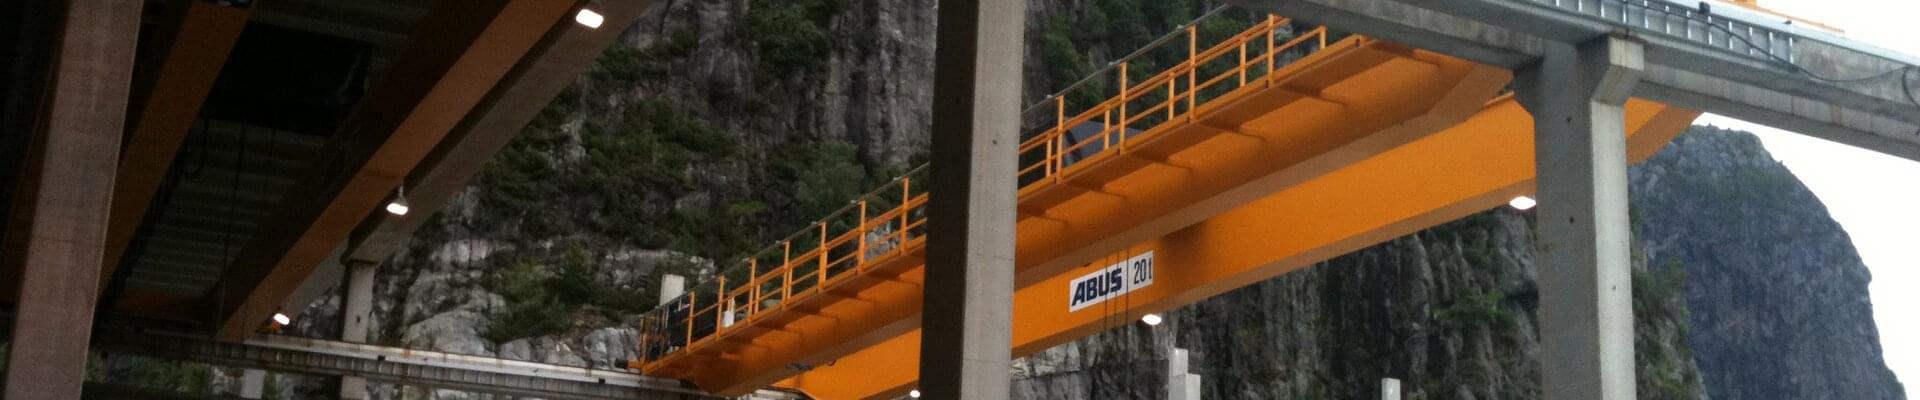 ABUS double girder crane ZLK